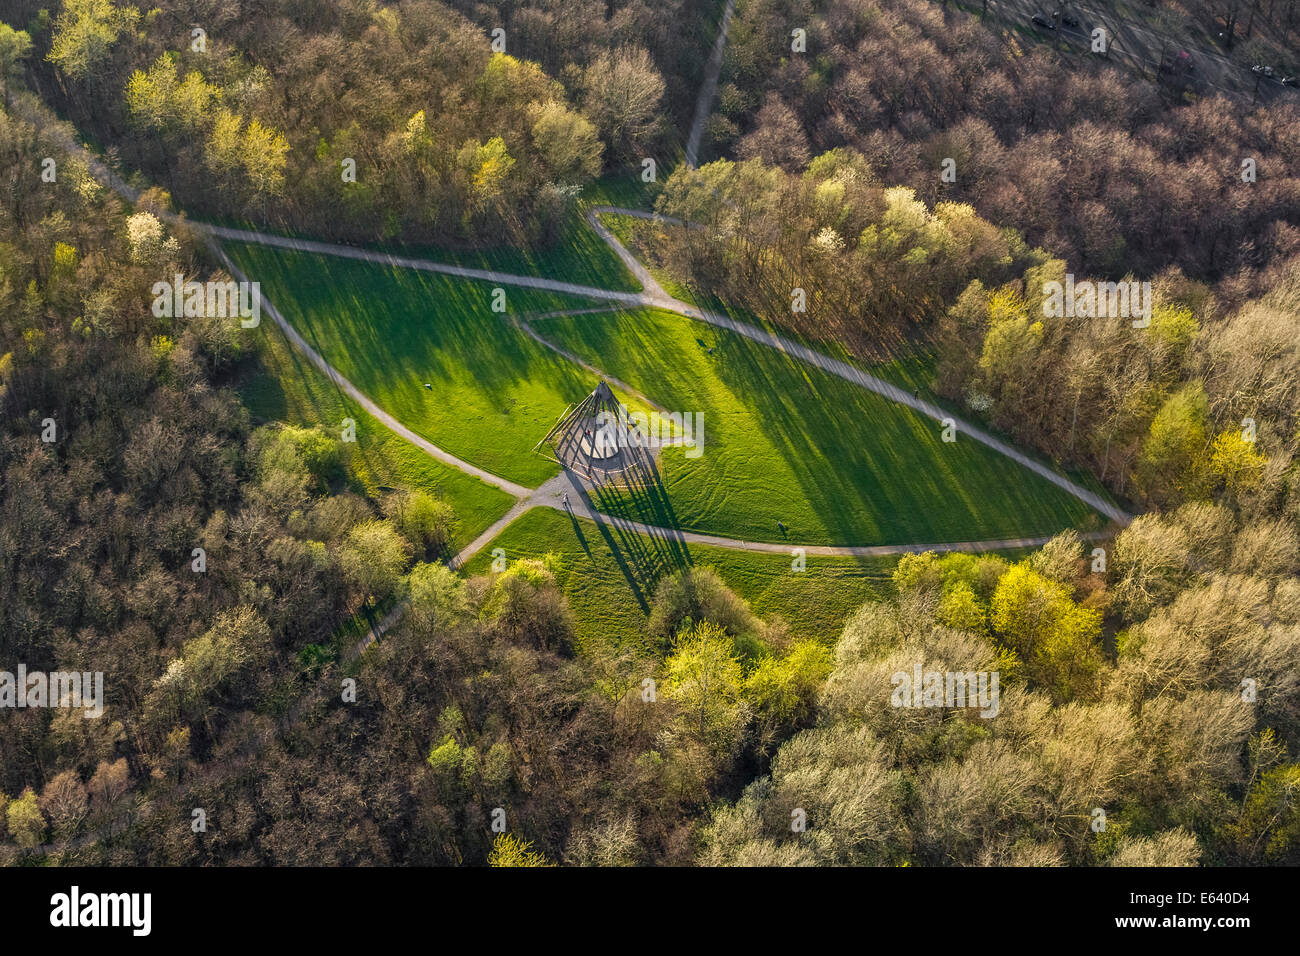 Vista aerea, una piramide di legno che gettano ombre, Gesundheitspark, Vonderort, Bottrop, distretto della Ruhr, Renania settentrionale-Vestfalia Foto Stock